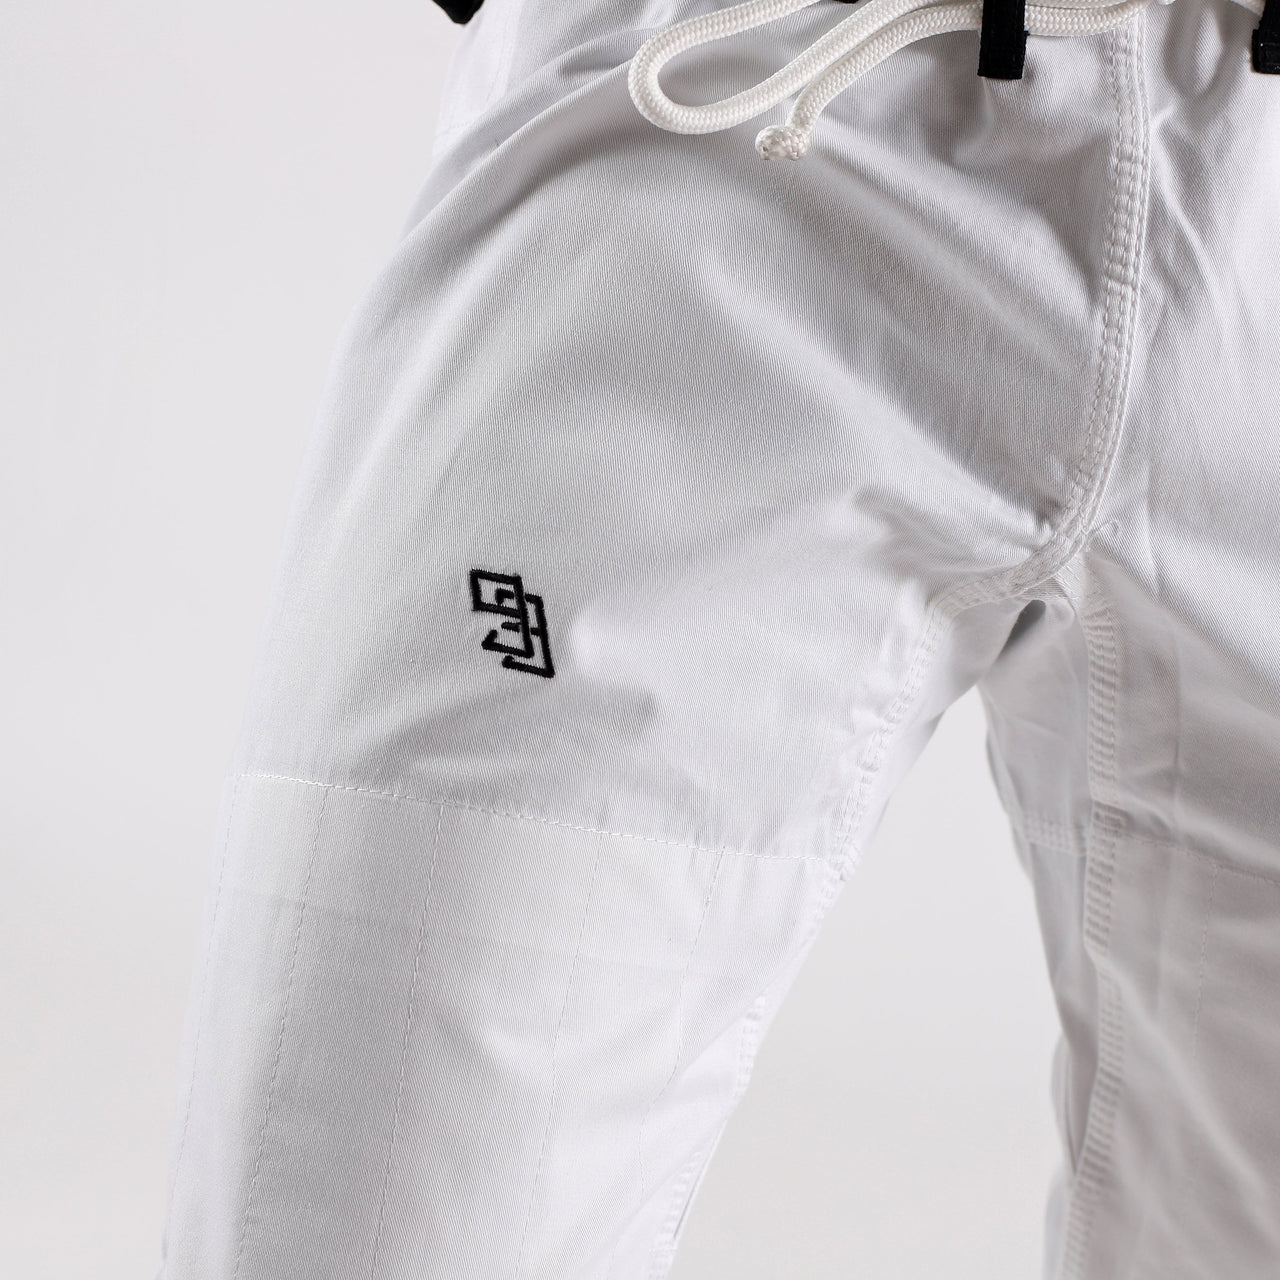 93brand Separate Women's BJJ Gi Pants - White